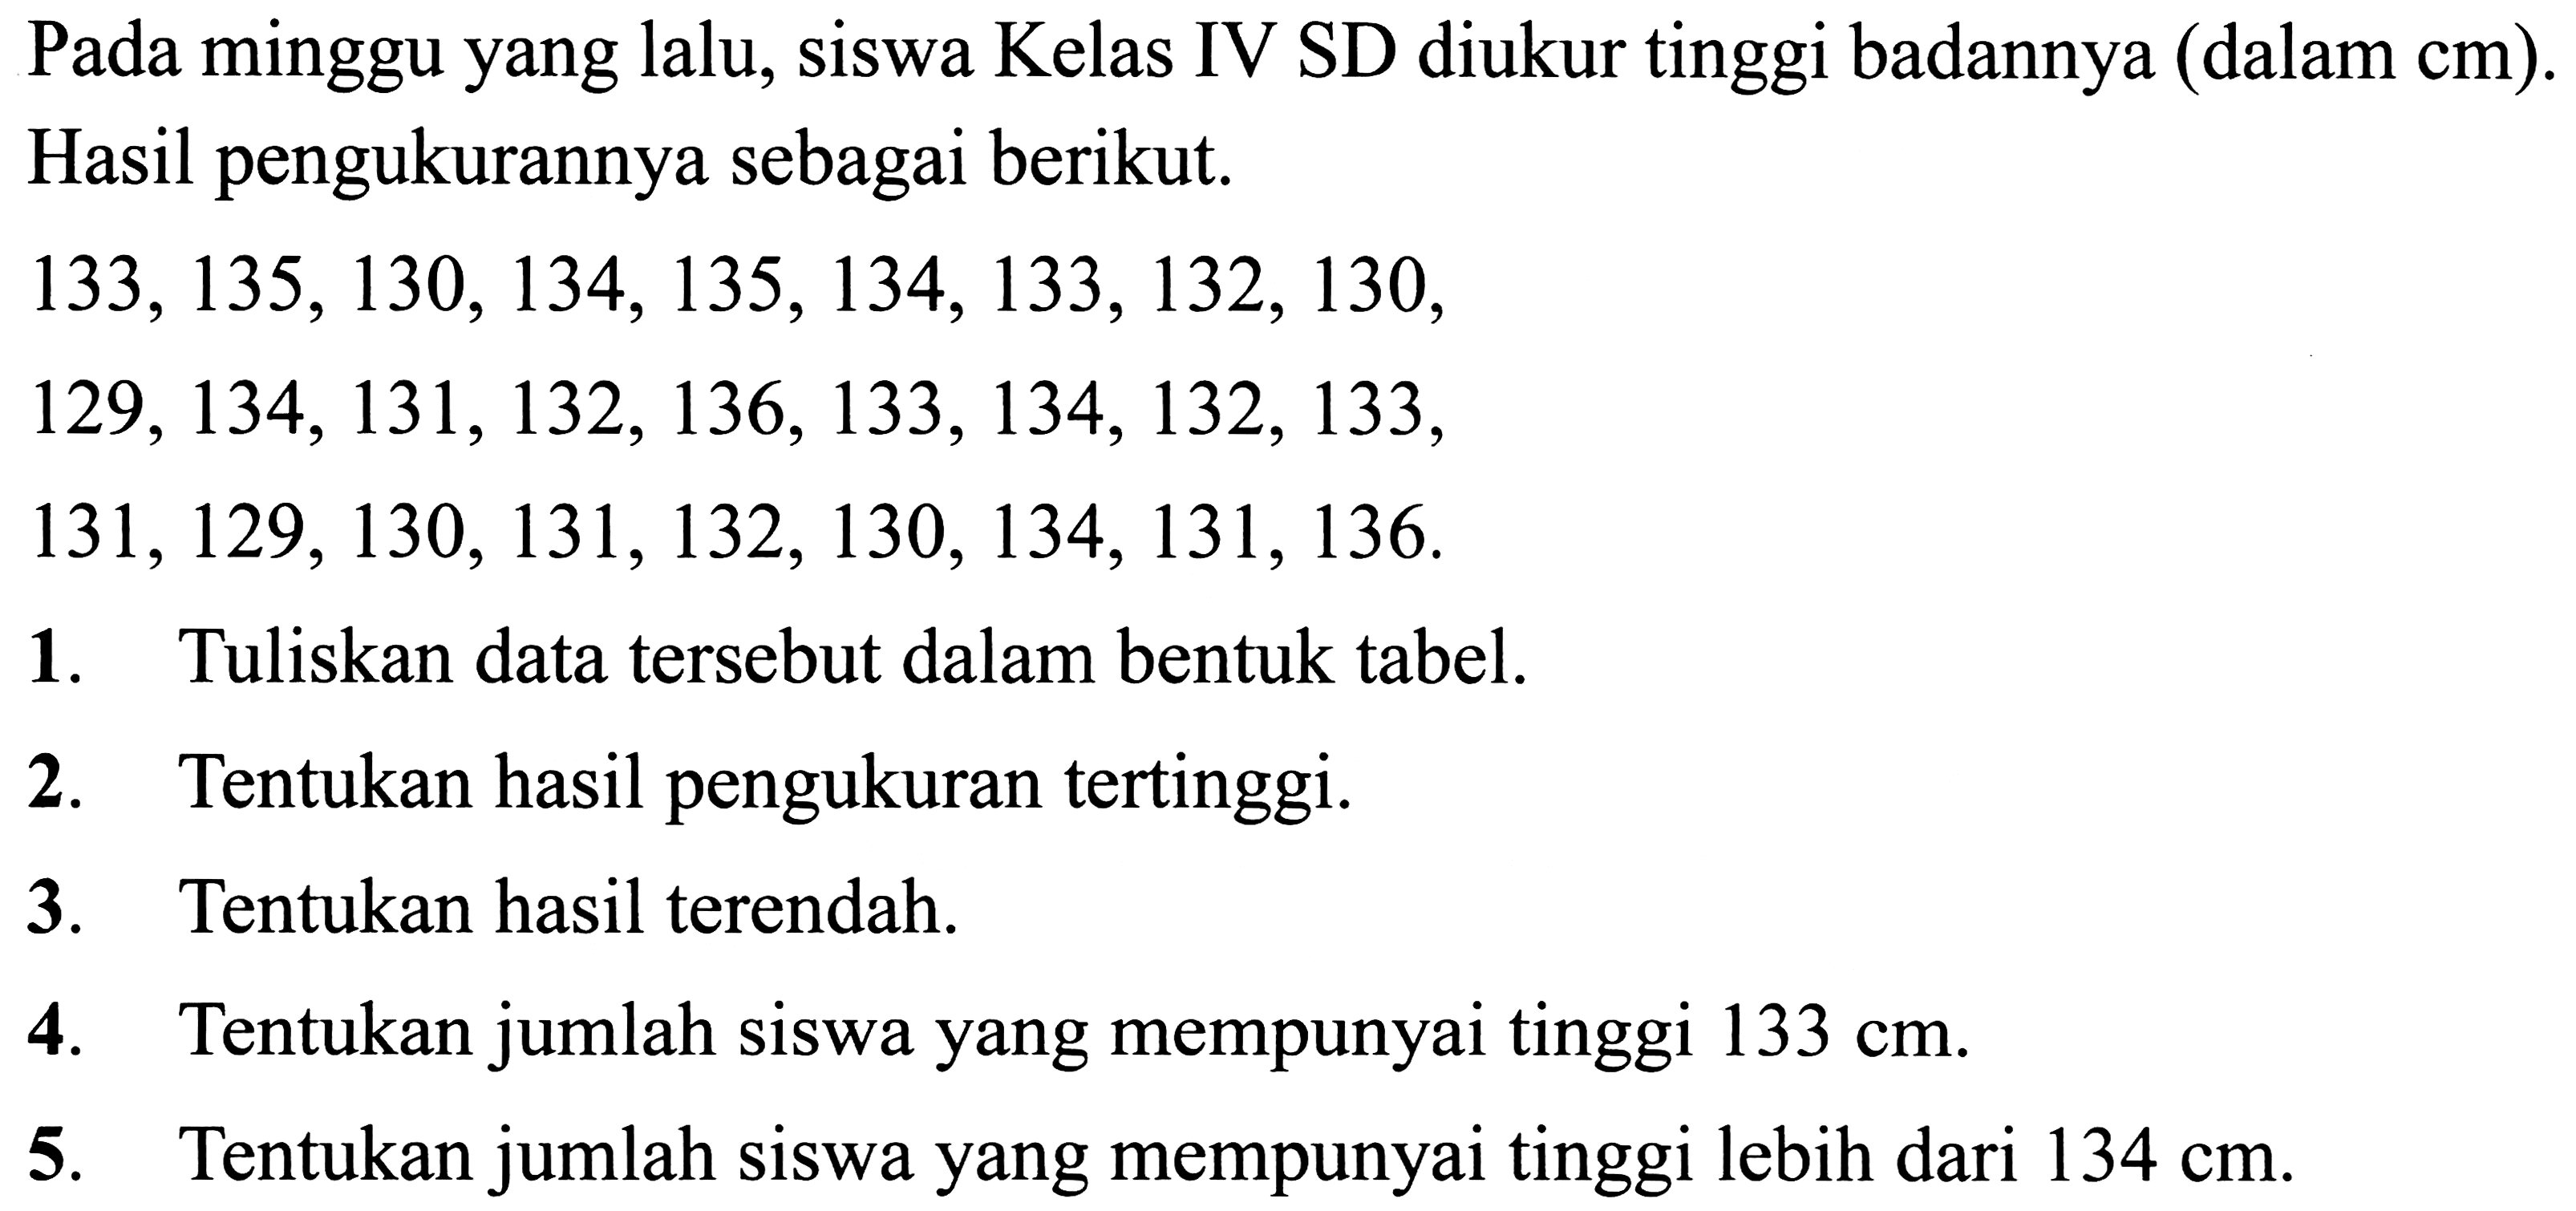 Pada minggu yang lalu, siswa Kelas IV SD diukur tinggi badannya (dalam  cm  ). Hasil pengukurannya sebagai berikut.
 133,135,130,134,135,134,133,132,130 ,
 129,134,131,132,136,133,134,132,133 ,
 131,129,130,131,132,130,134,131,136 .
1. Tuliskan data tersebut dalam bentuk tabel.
2. Tentukan hasil pengukuran tertinggi.
3. Tentukan hasil terendah.
4. Tentukan jumlah siswa yang mempunyai tinggi  133 cm .
5. Tentukan jumlah siswa yang mempunyai tinggi lebih dari  134 cm .